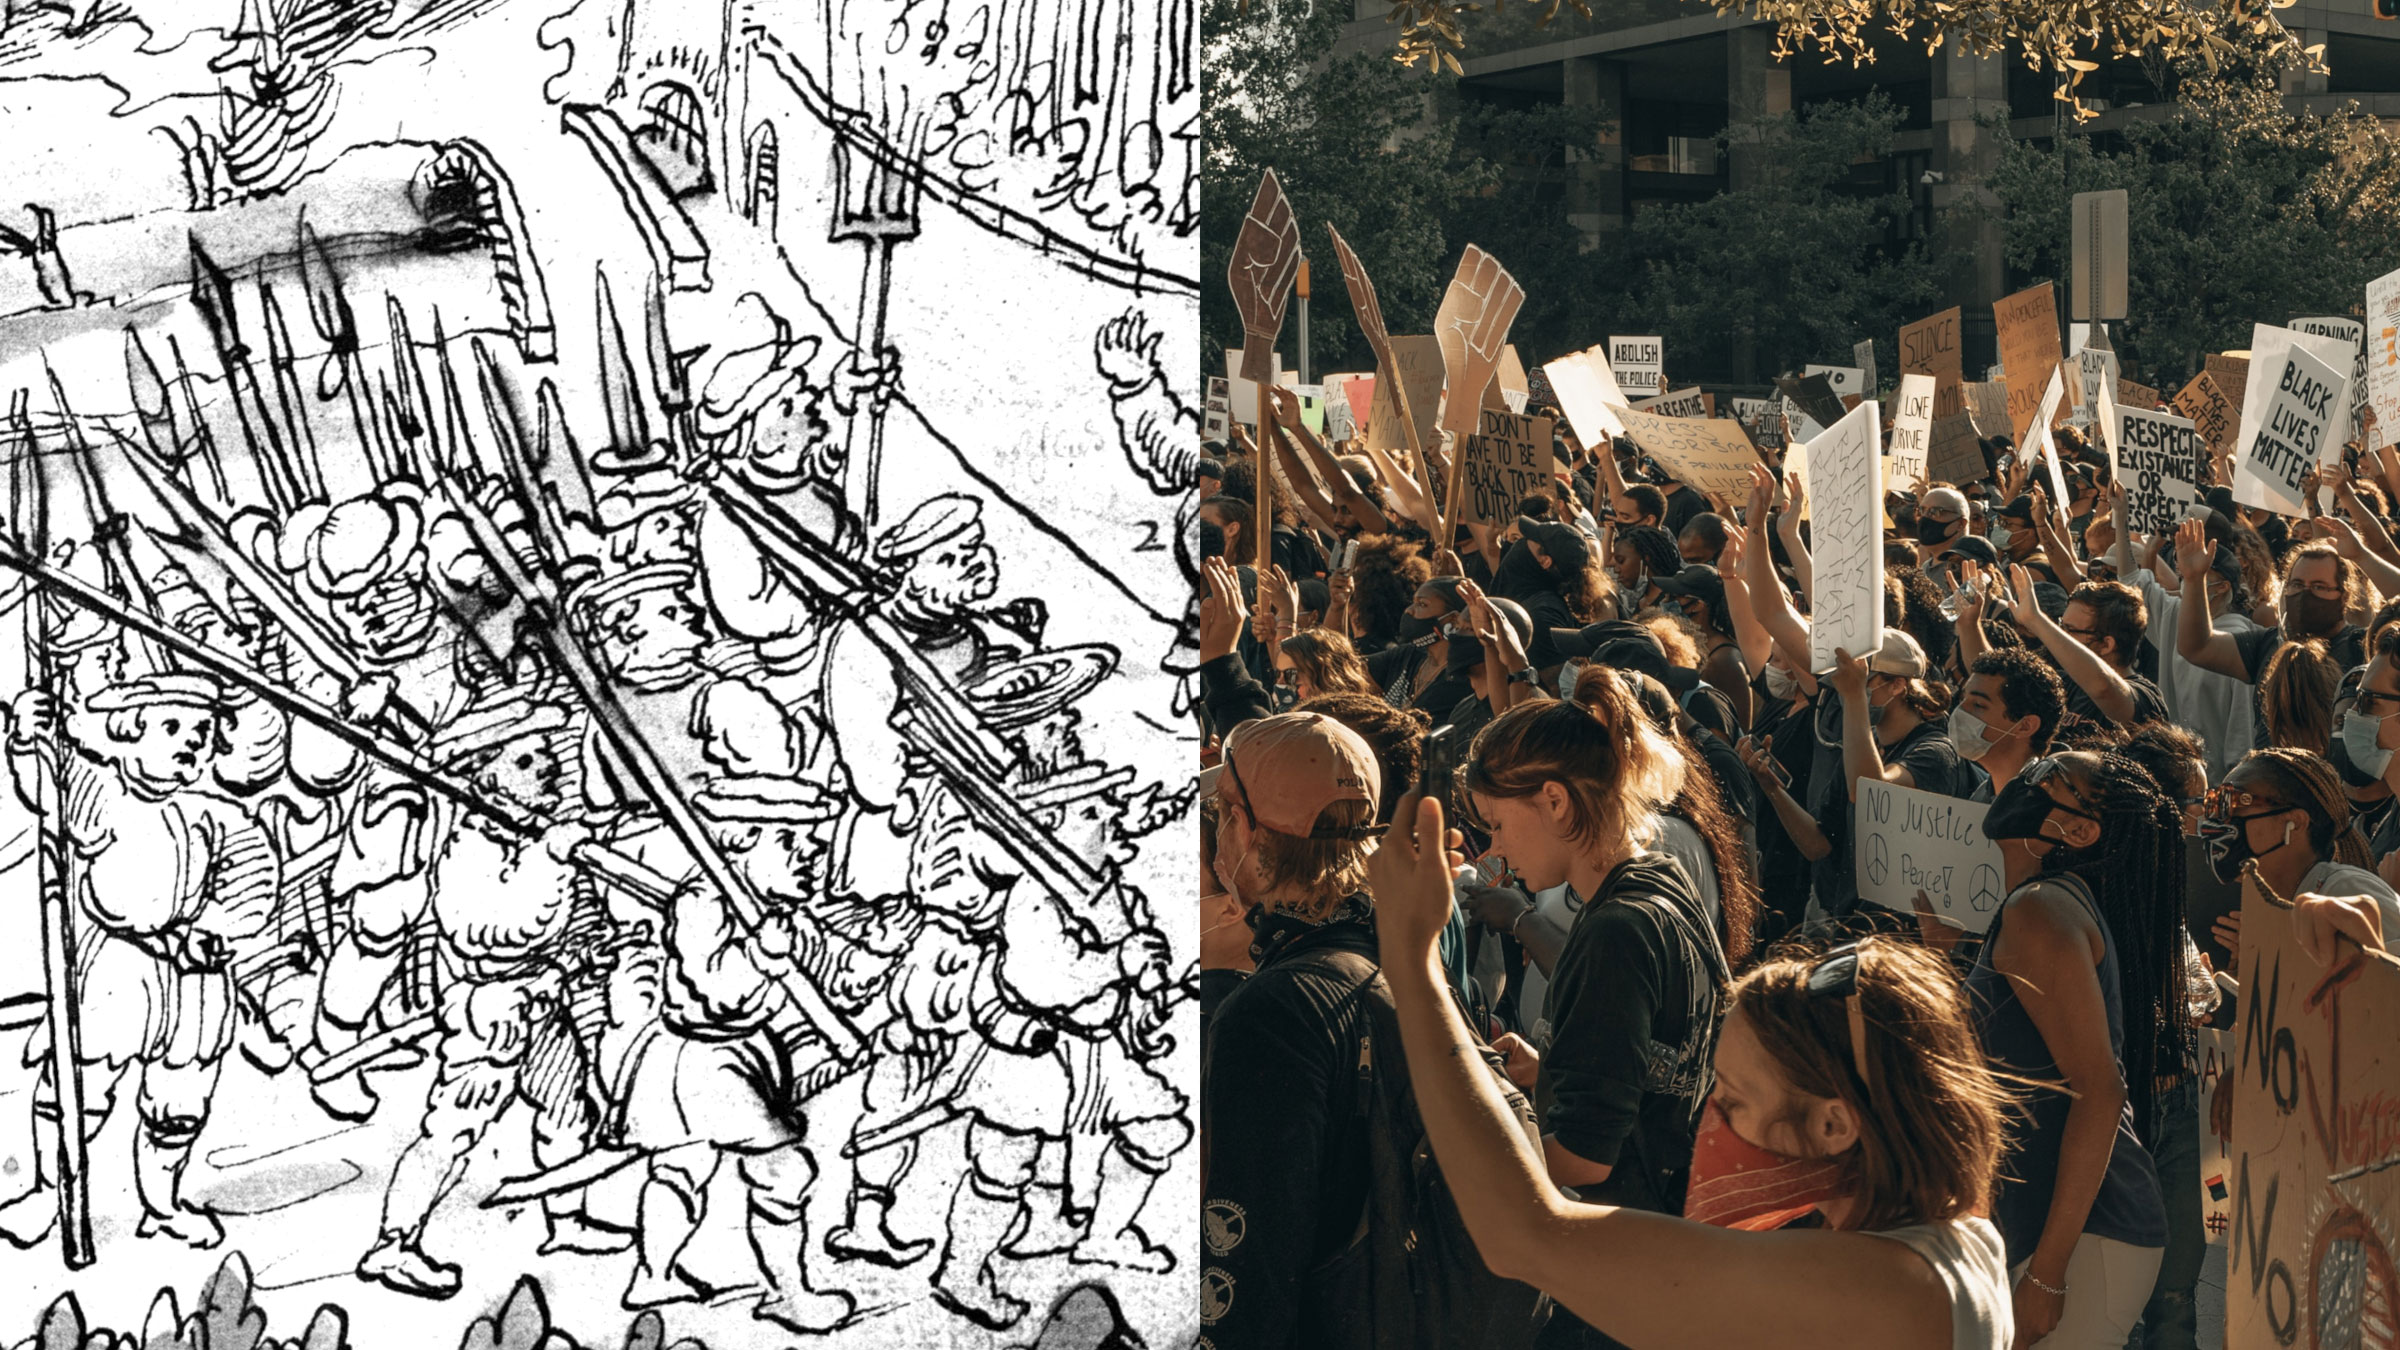 Collage: Weißenauer Chronik von 1525 und Protestierende heute